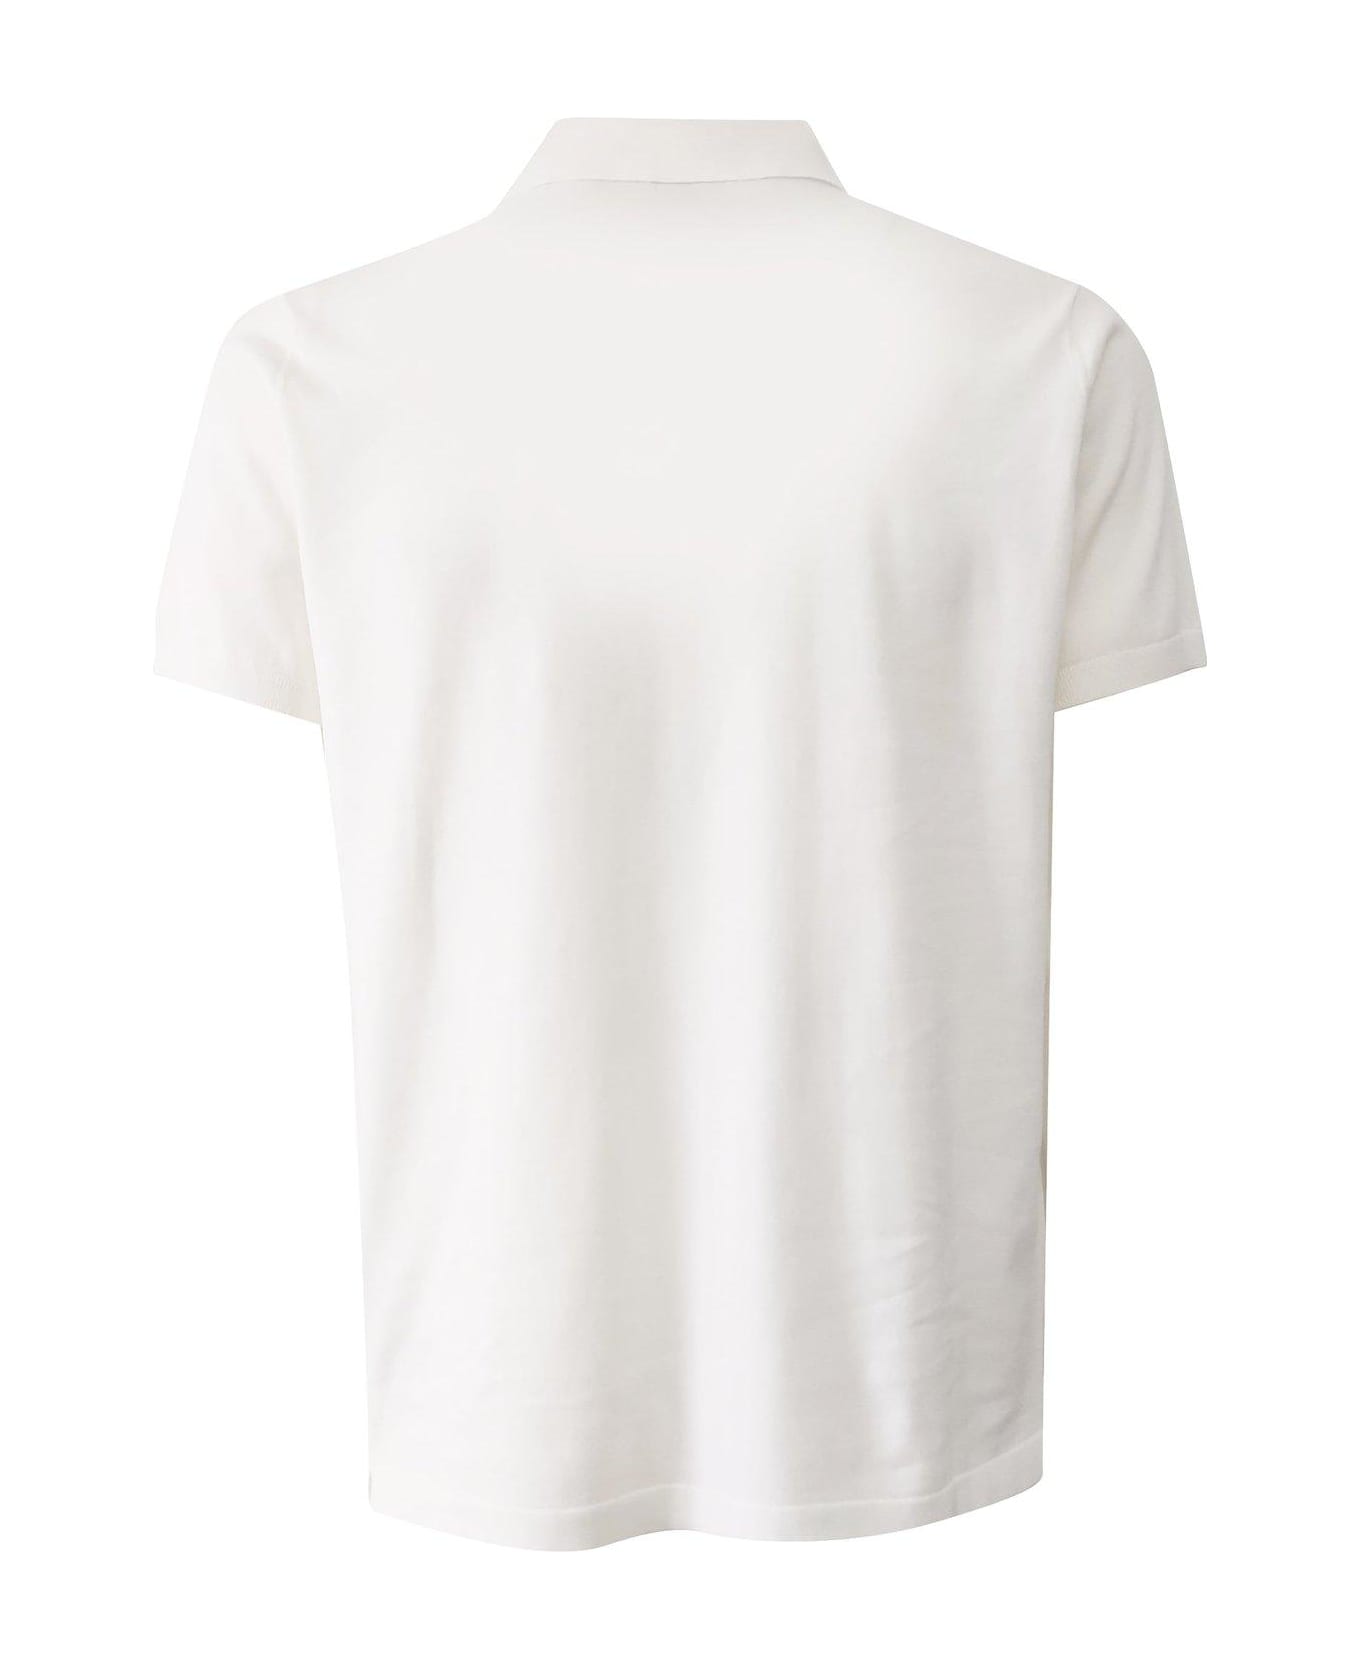 Aspesi Buttoned Short-sleeved Polo Shirt - White シャツ